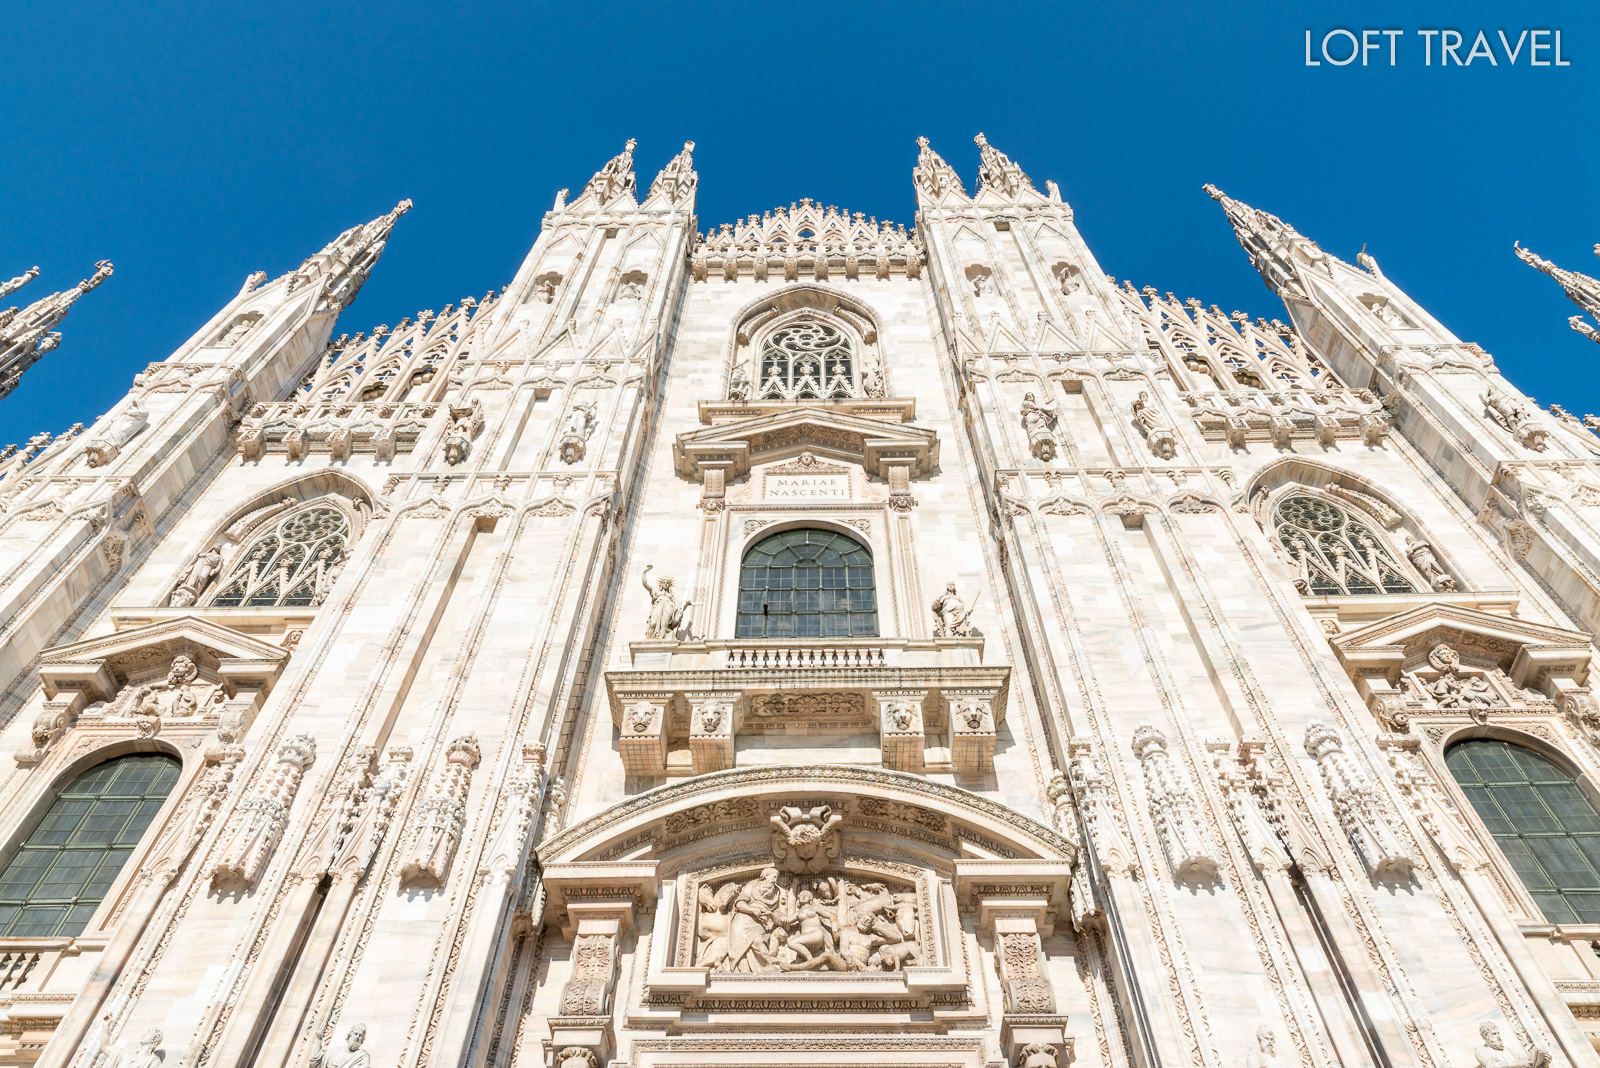 มิลานดูโอโมหรือมหาวิหารแห่งเมืองมิลาน (Duomo di Milano) ที่สร้างด้วยสถาปัตยกรรมแบบนีโอโกธิคอย่างสวยงาม ทั้งบริเวณภายนอกและกระจกสีสเตนกลาสที่สวยงามภายใน